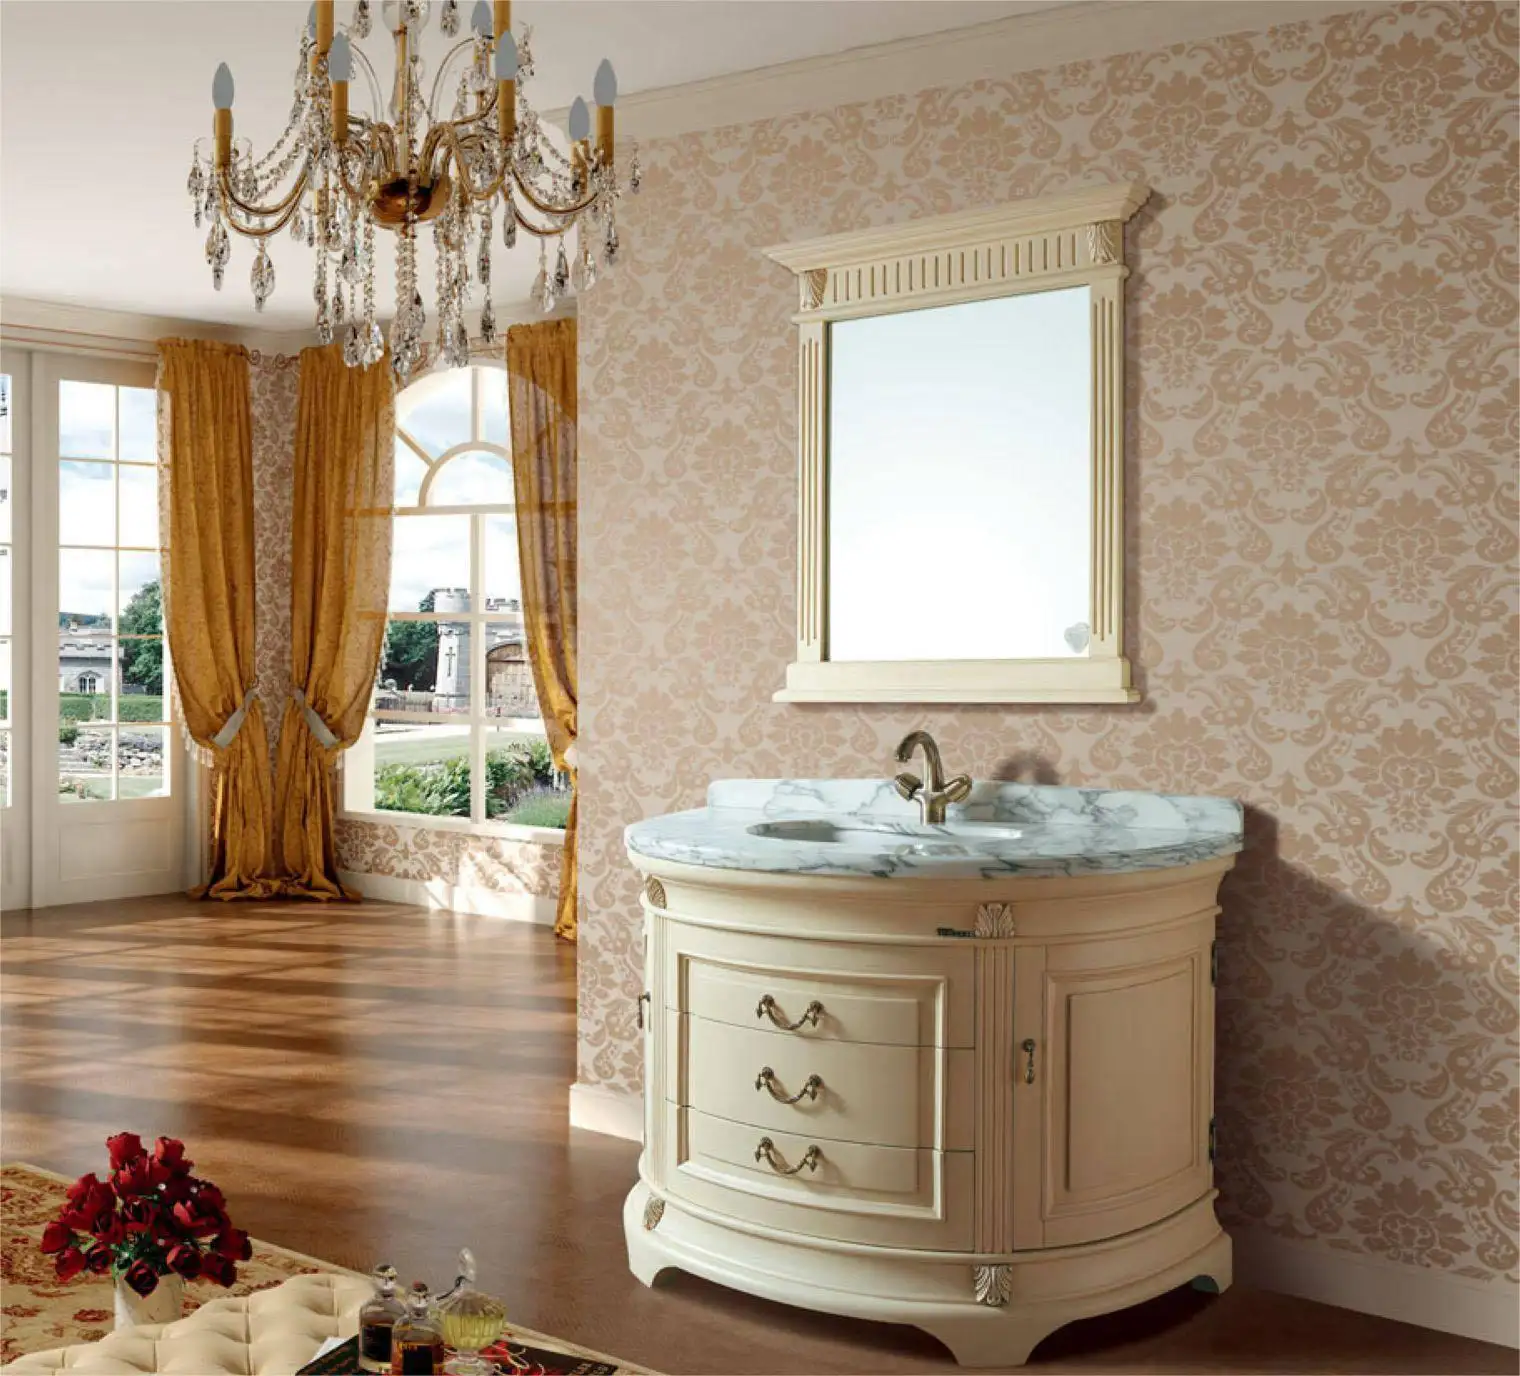 Armário de banheiro em estilo real, lindo, à prova d'água de alta qualidade, toda em madeira maciça, pintura estilo palácio